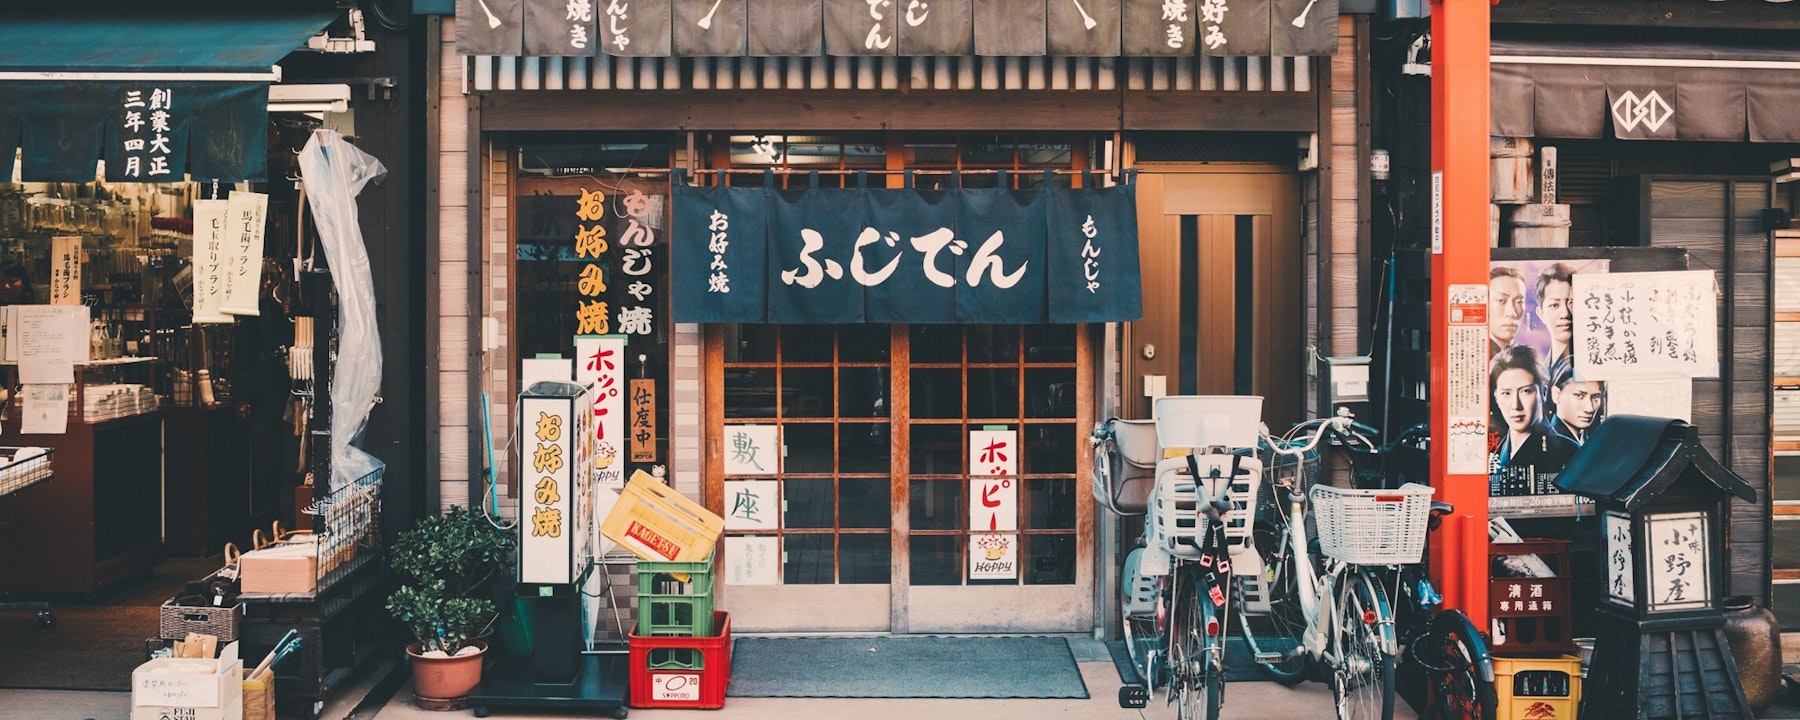 Restaurant Tokyo